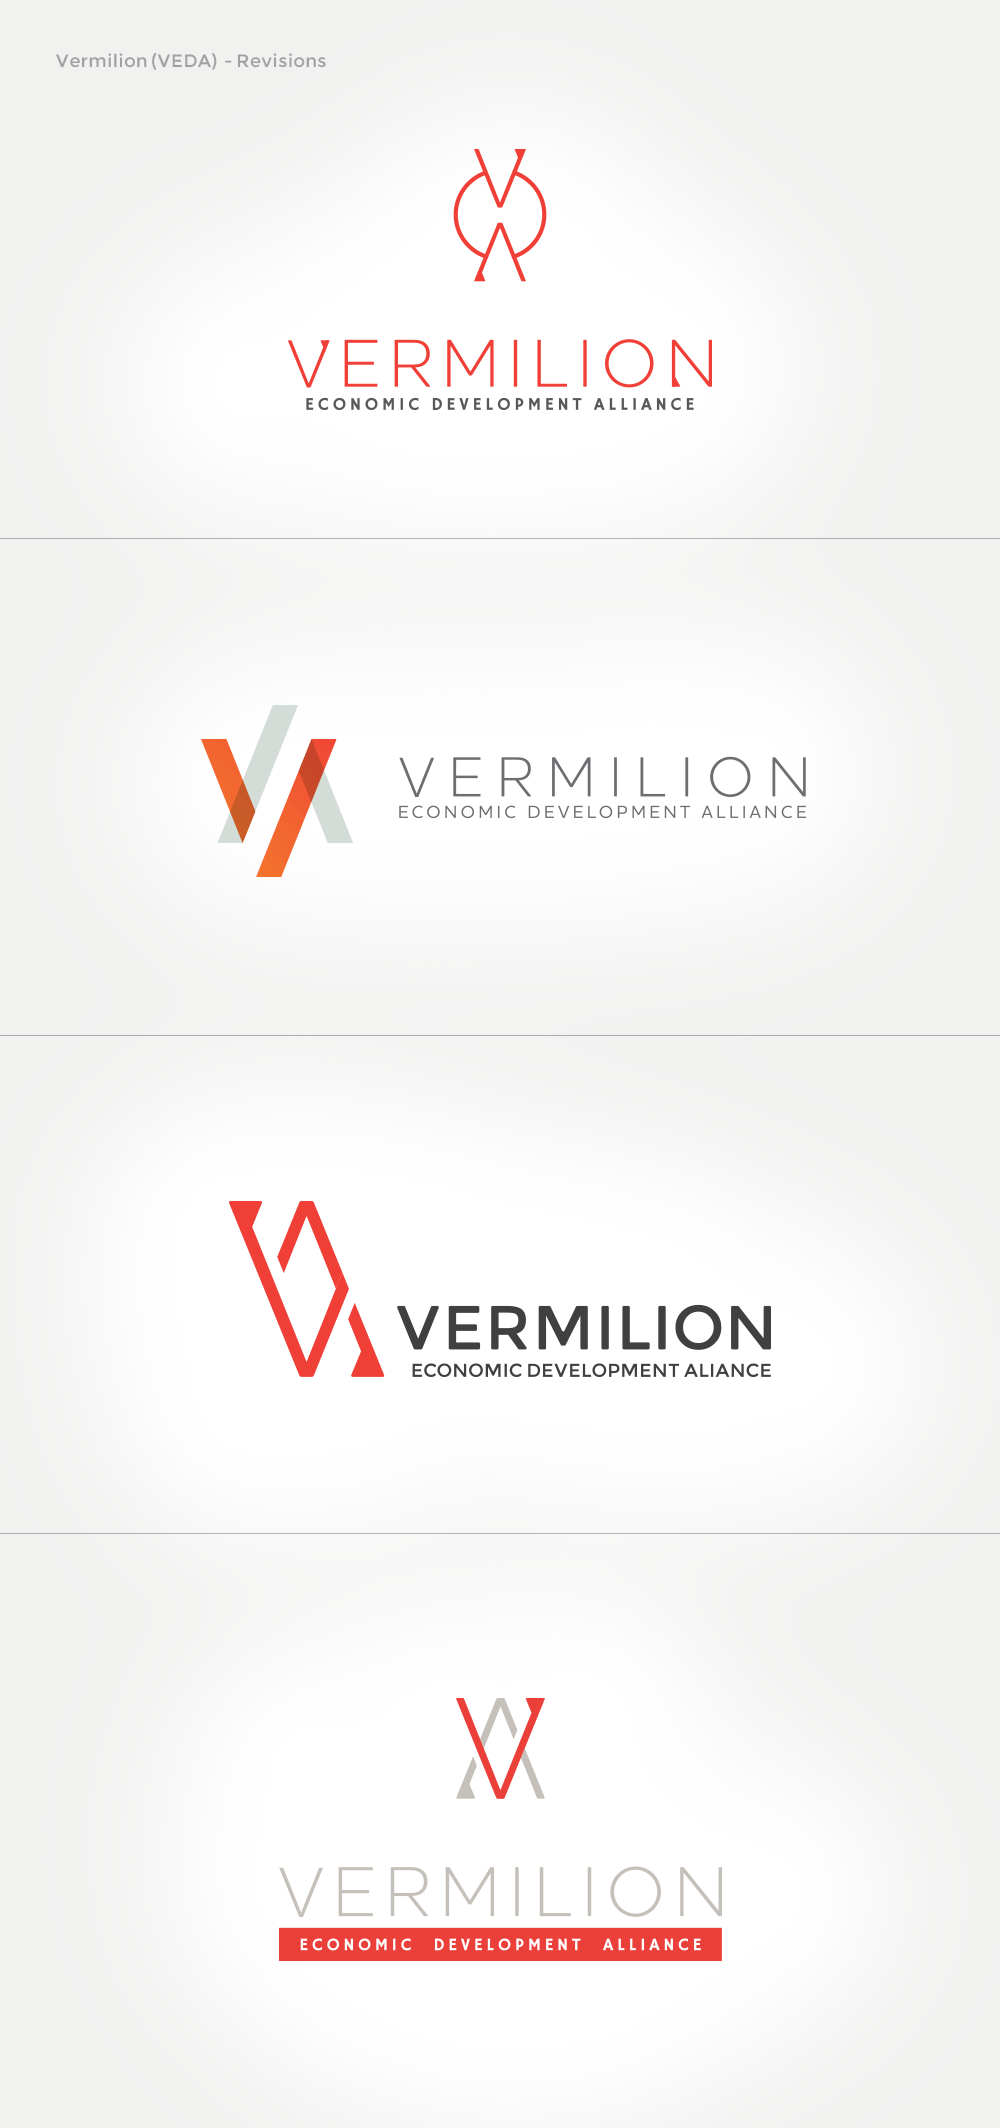 Vermilion Logo - Vermilion Economic Development Alliance: Logo development meets